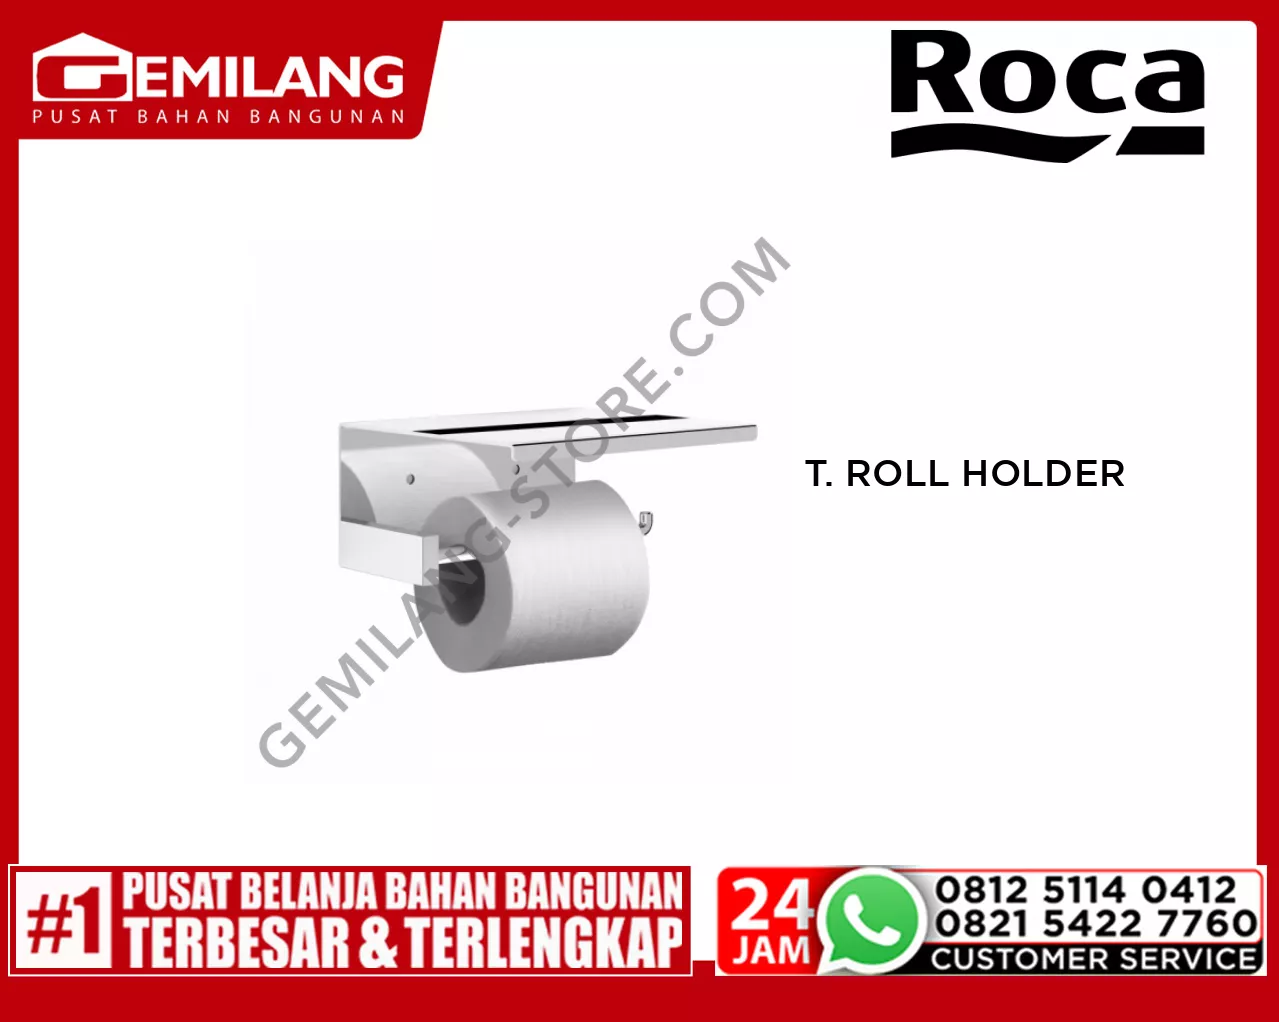 ROCA NUOVA TOILET ROLL HOLDER FRCBR-AC-A817096001